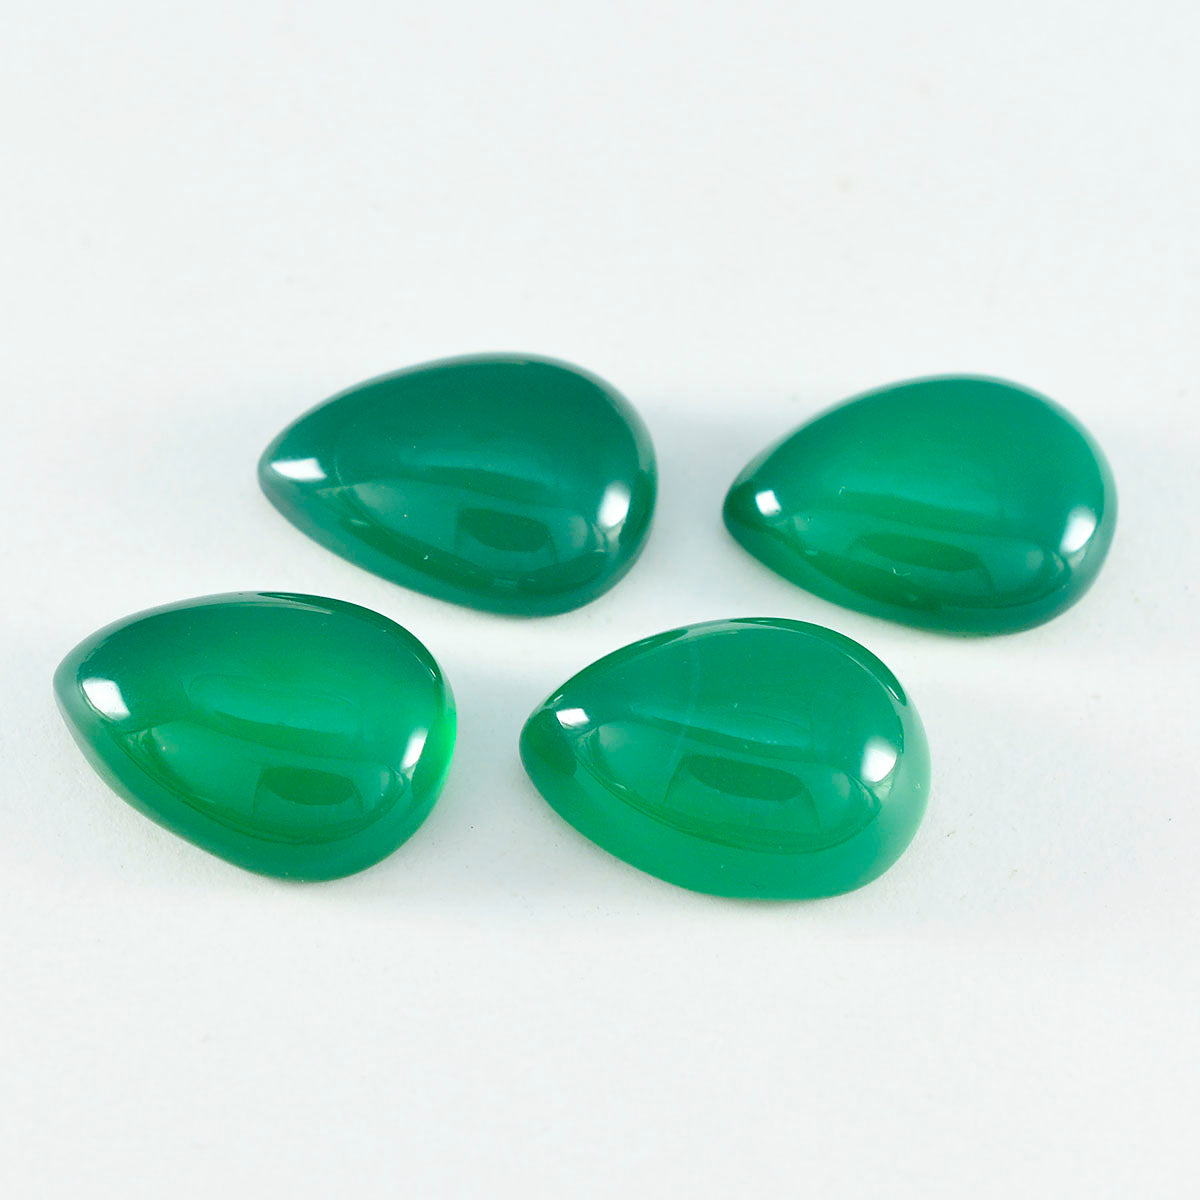 Riyogems 1 Stück grüner Onyx-Cabochon, 12 x 16 mm, Birnenform, fantastischer hochwertiger loser Stein